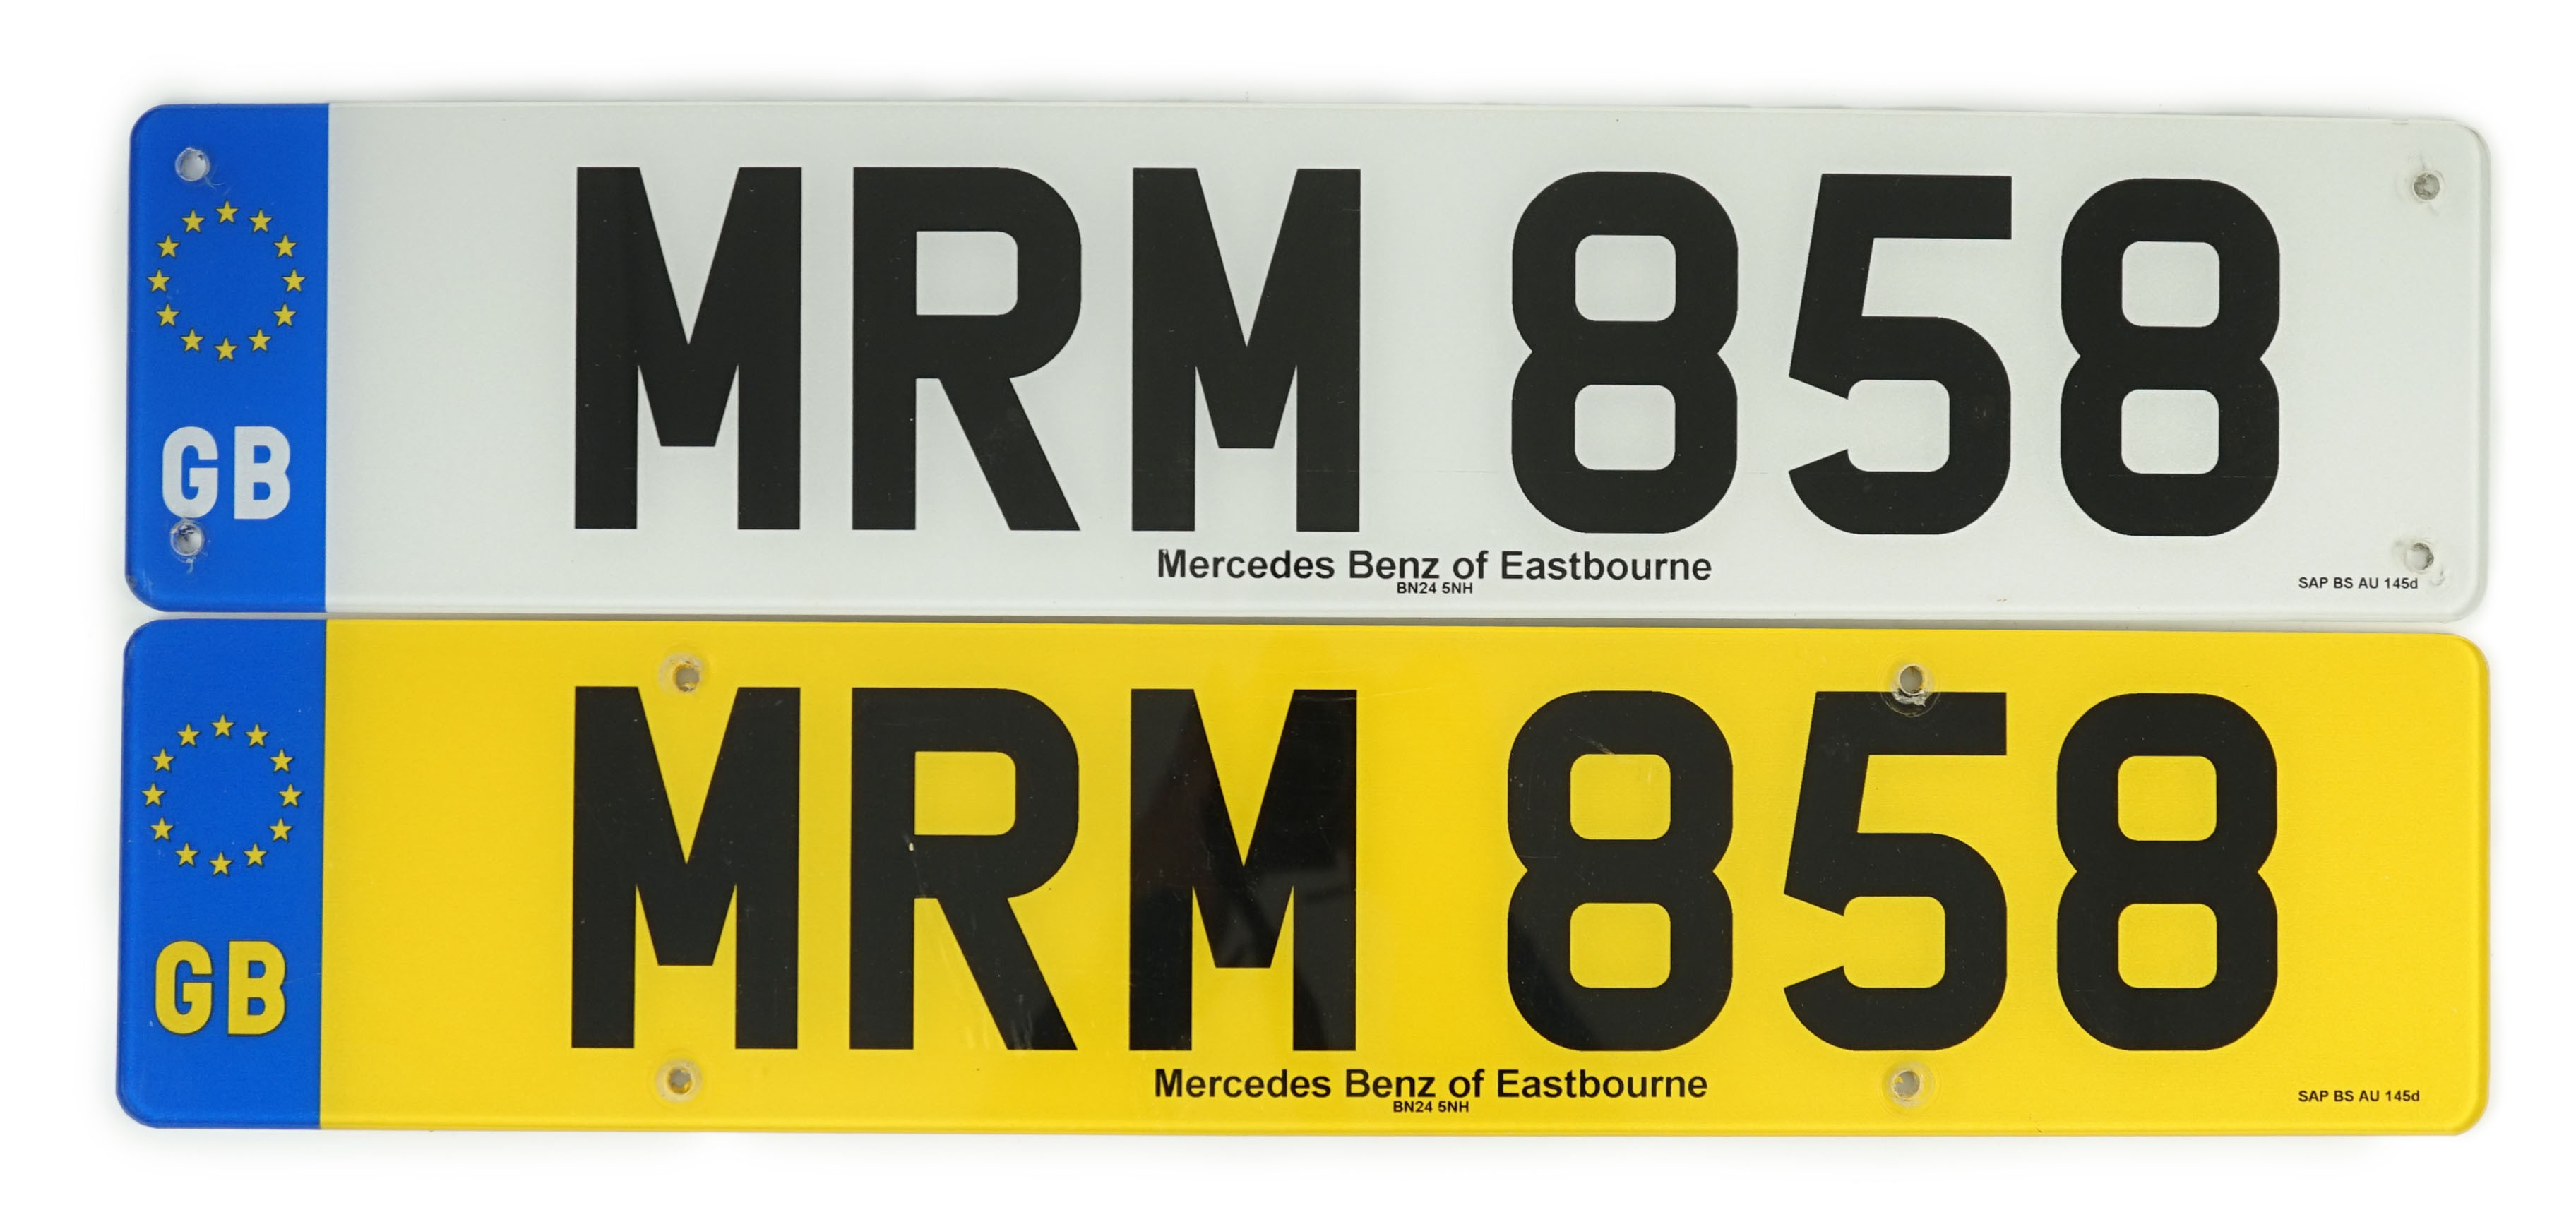 'MRM 858' UK Registration Number